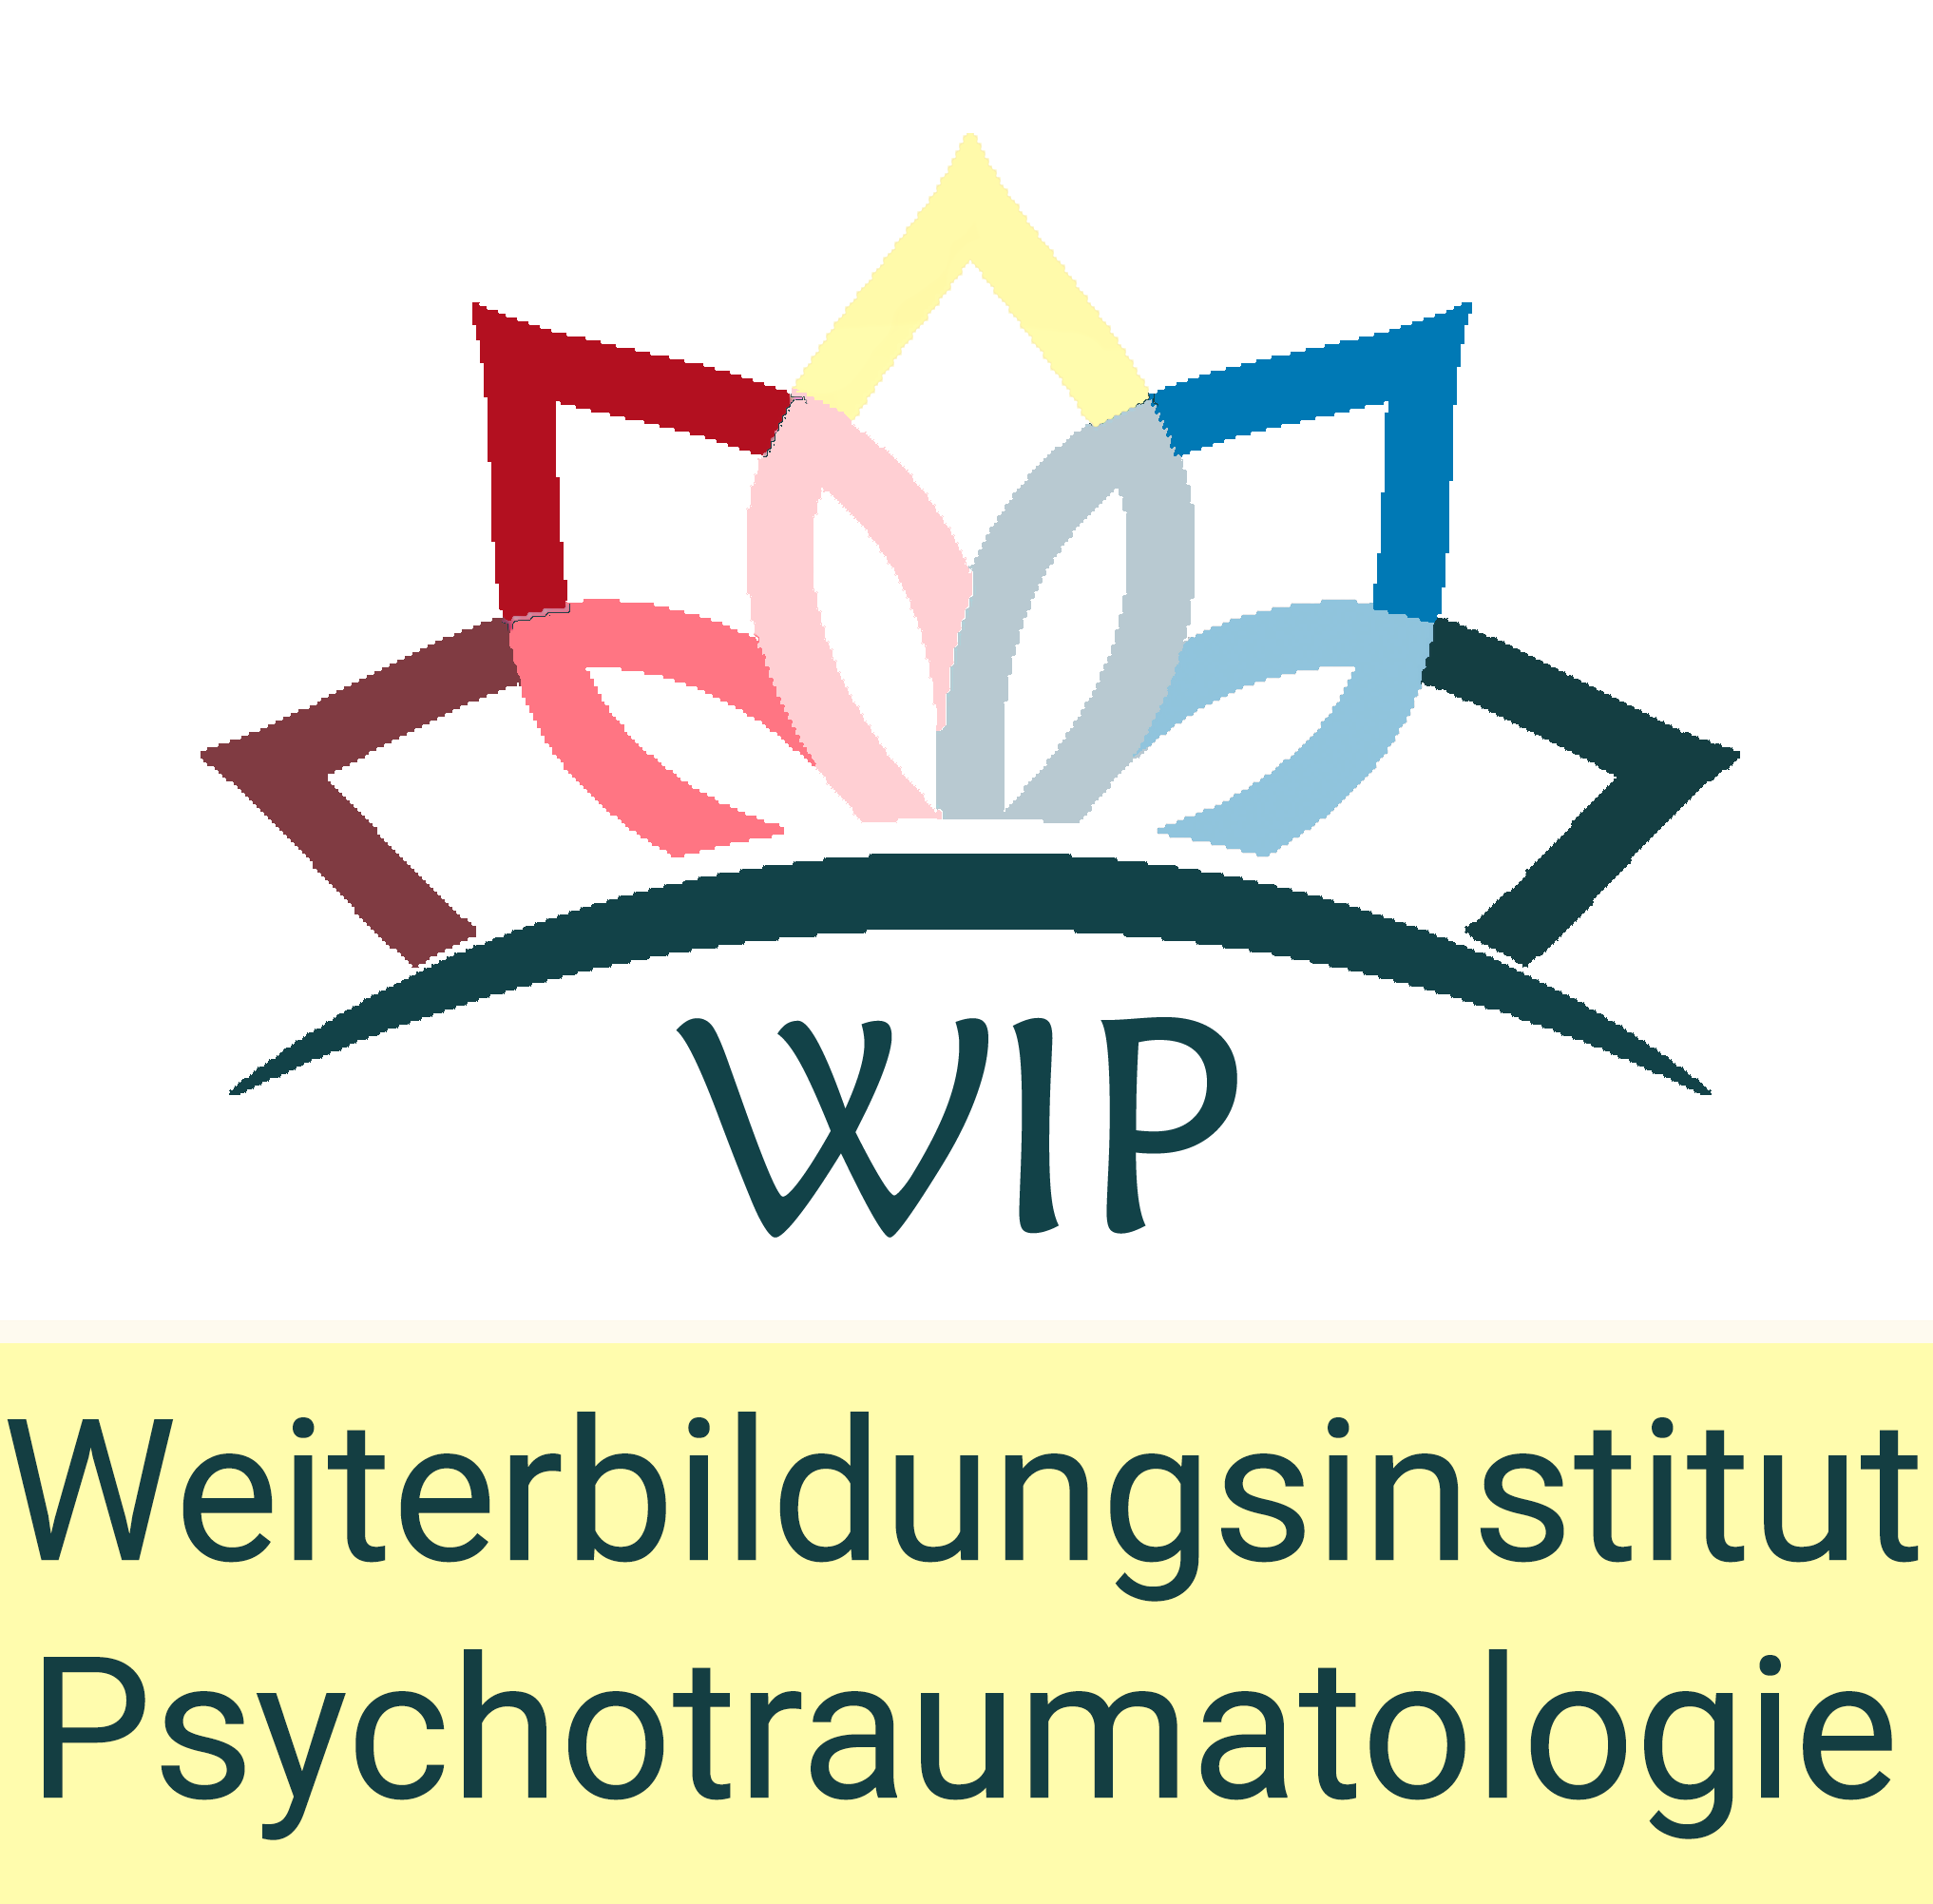 Weiterbildungsinstitut Psychotraumatologie